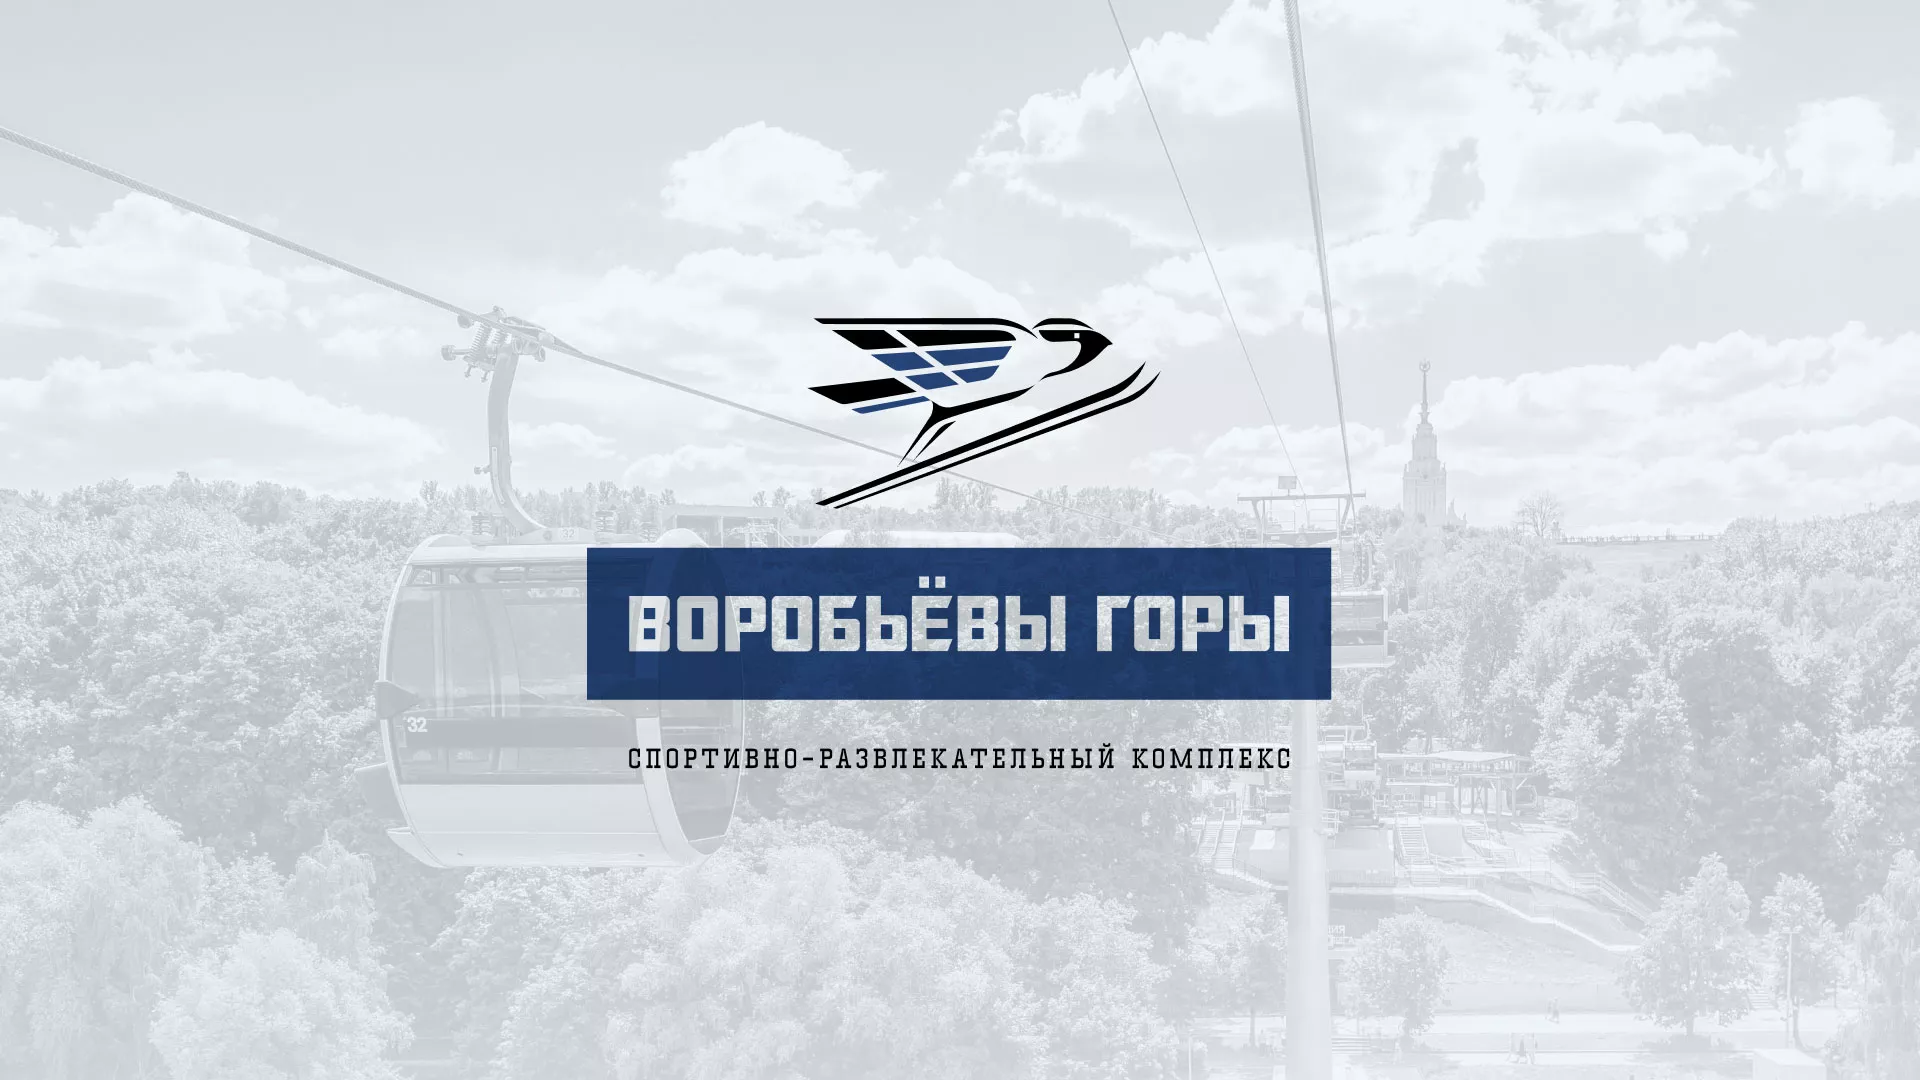 Разработка сайта в Братске для спортивно-развлекательного комплекса «Воробьёвы горы»